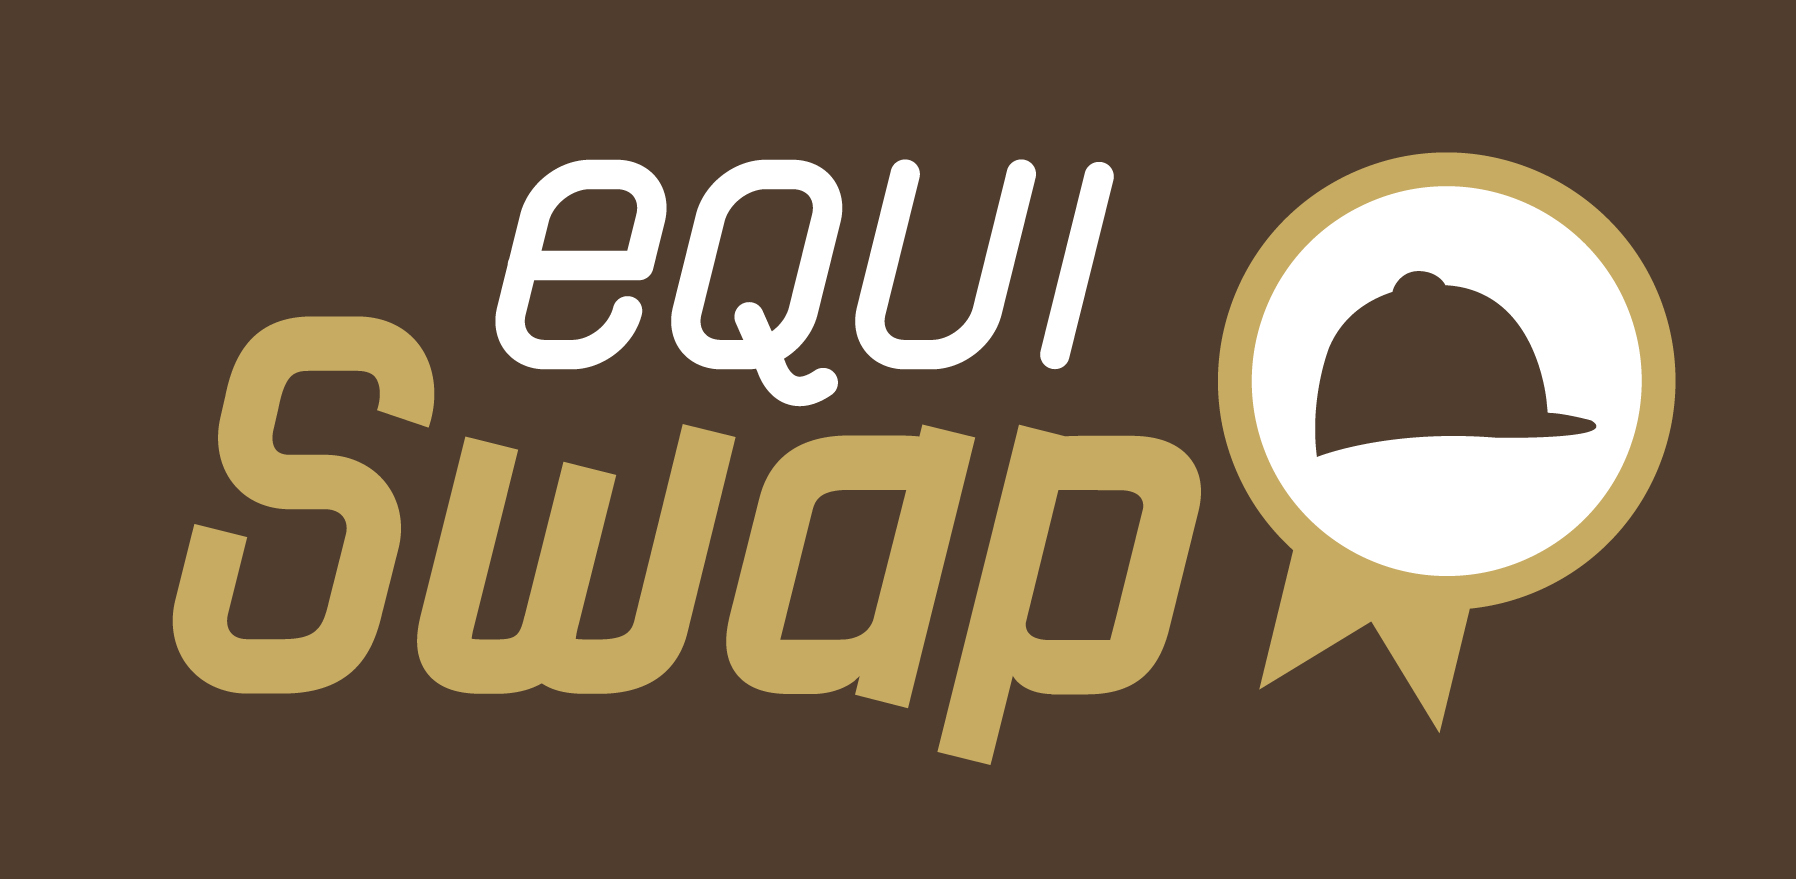 EQUISWAP